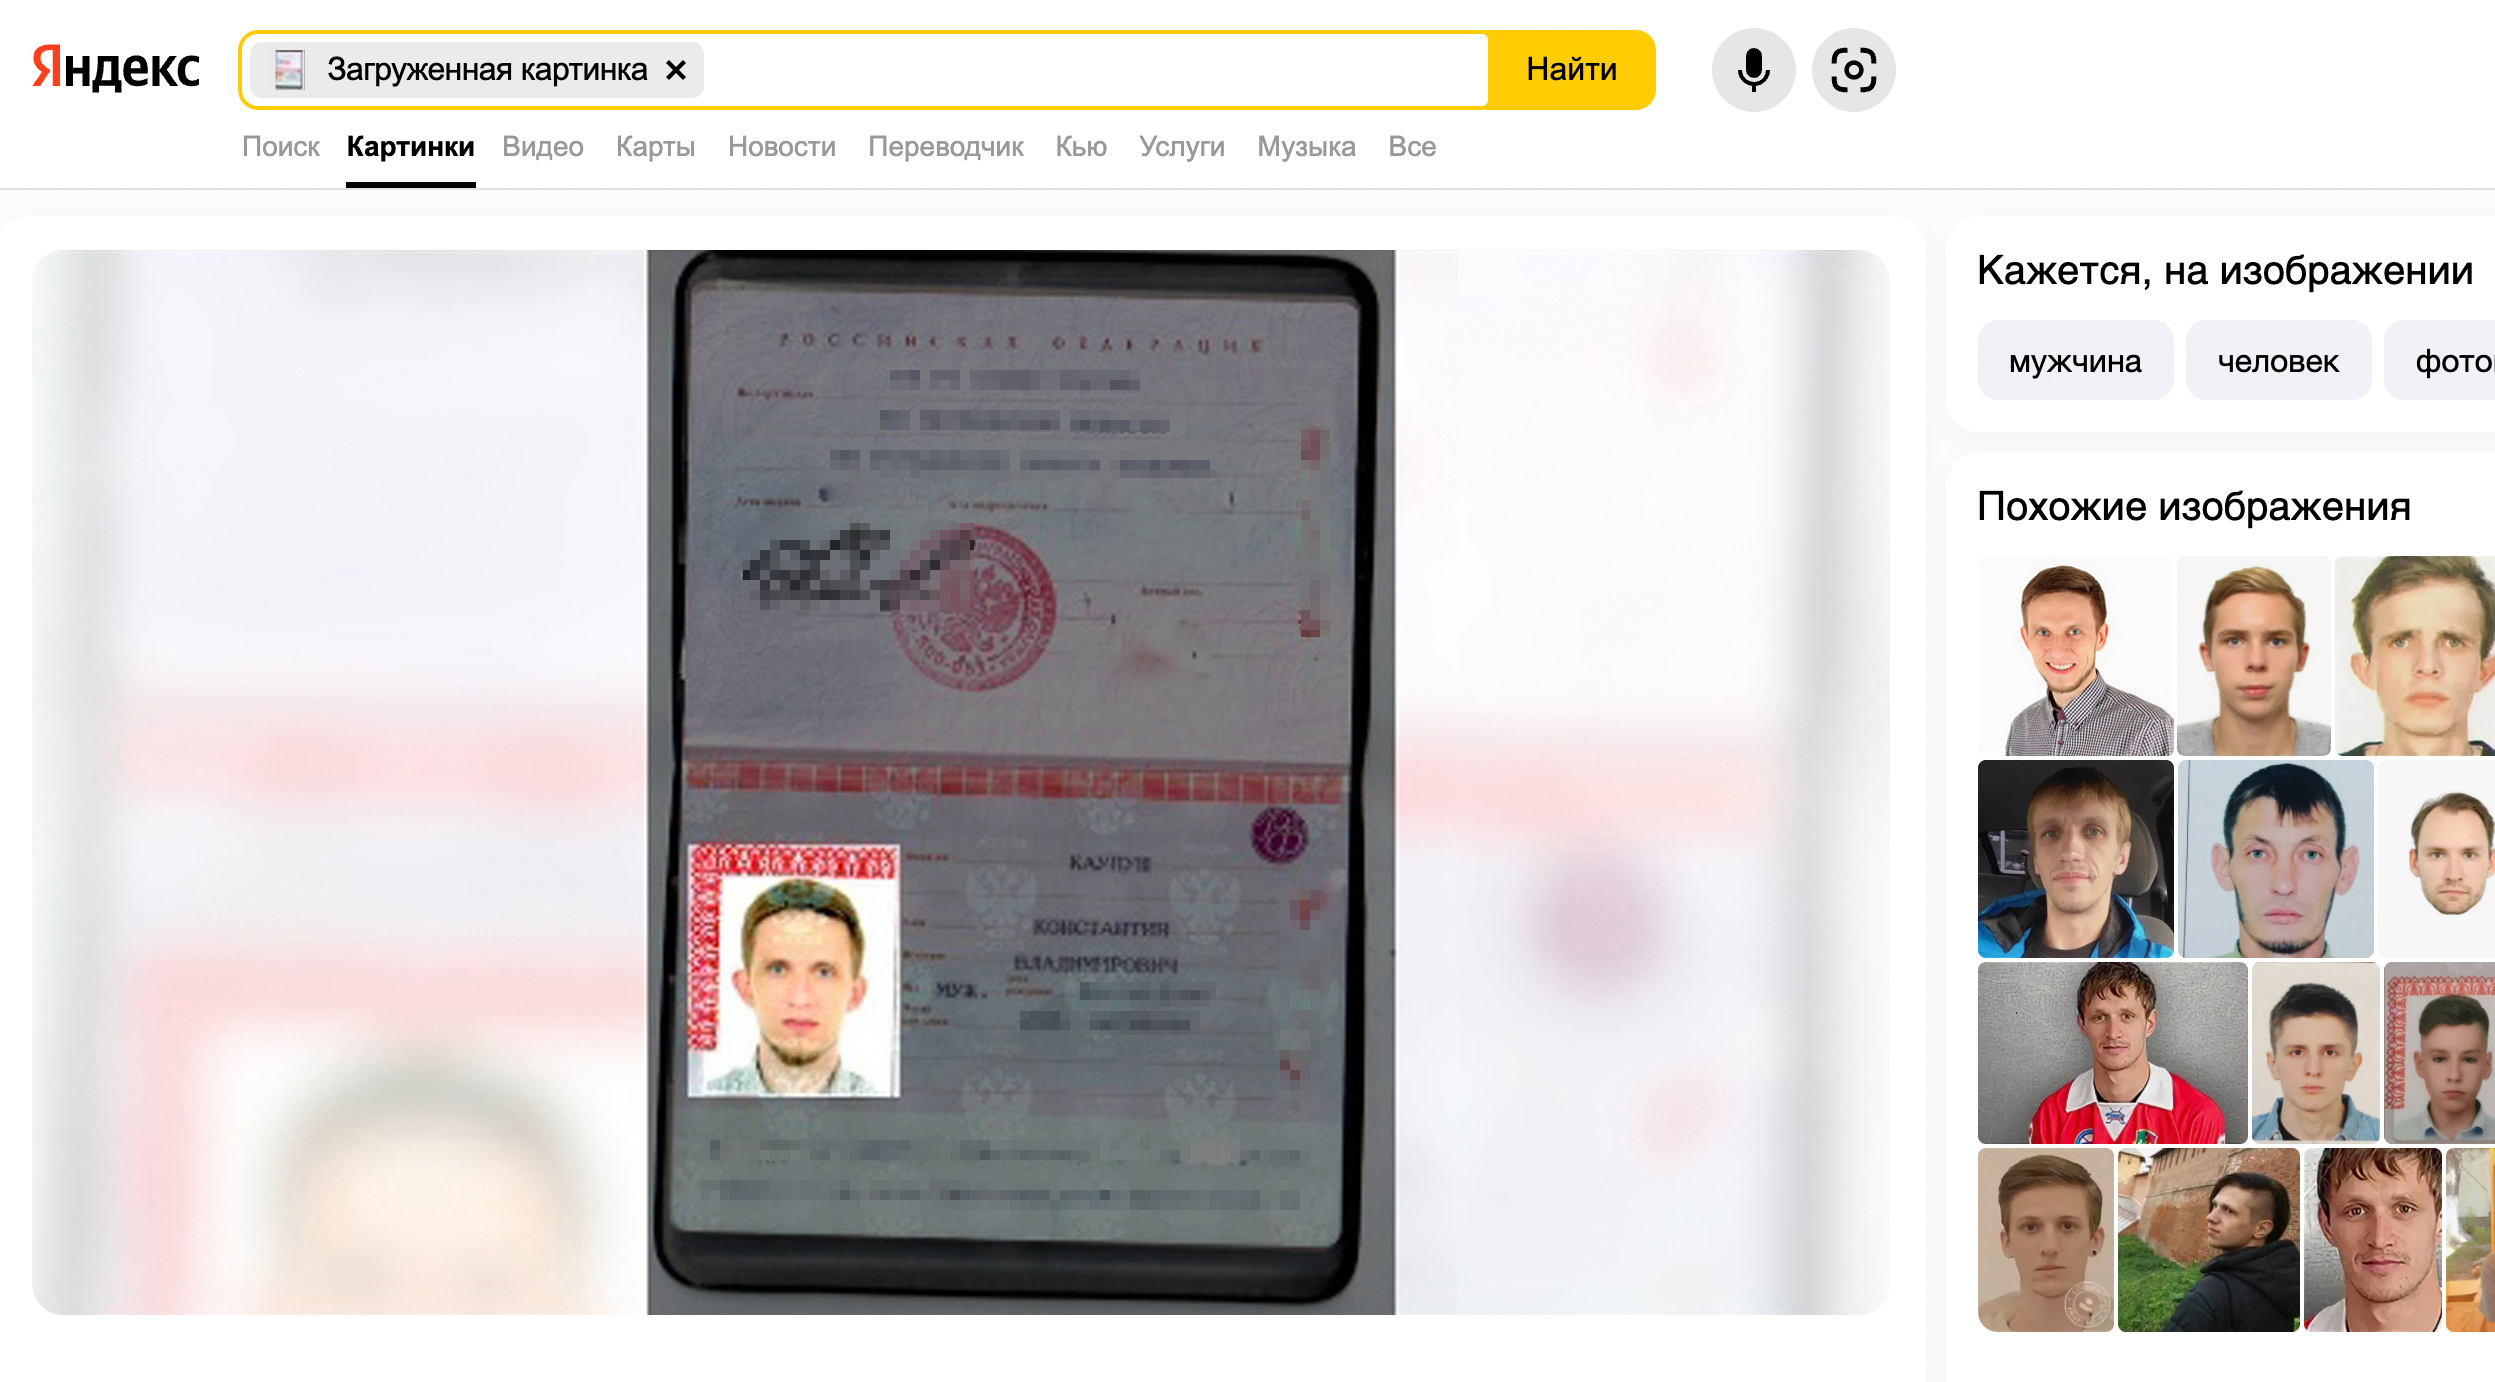 Несмотря на довольно низкое качество фото в паспорте, Яндекс все⁠-⁠таки нашел мое фото в глубинах интернета и поставил его первым в списке похожих